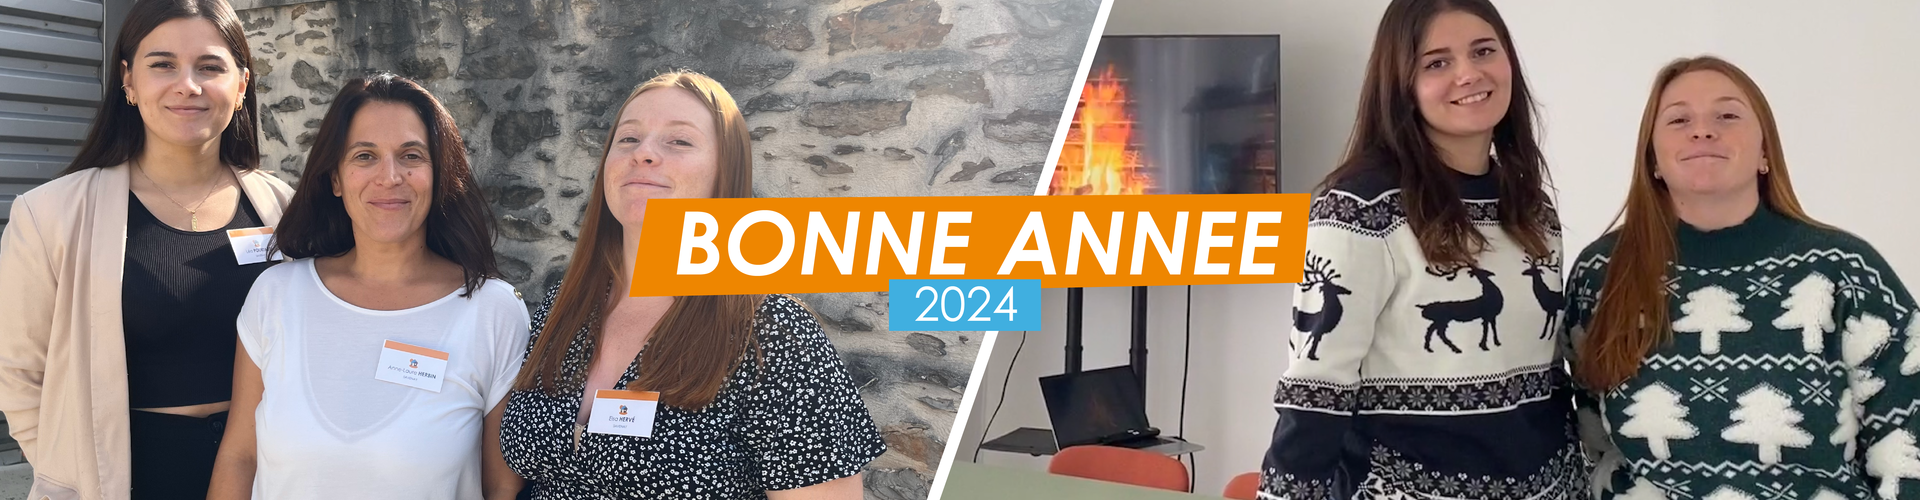 banniere-bonne-annee-2024